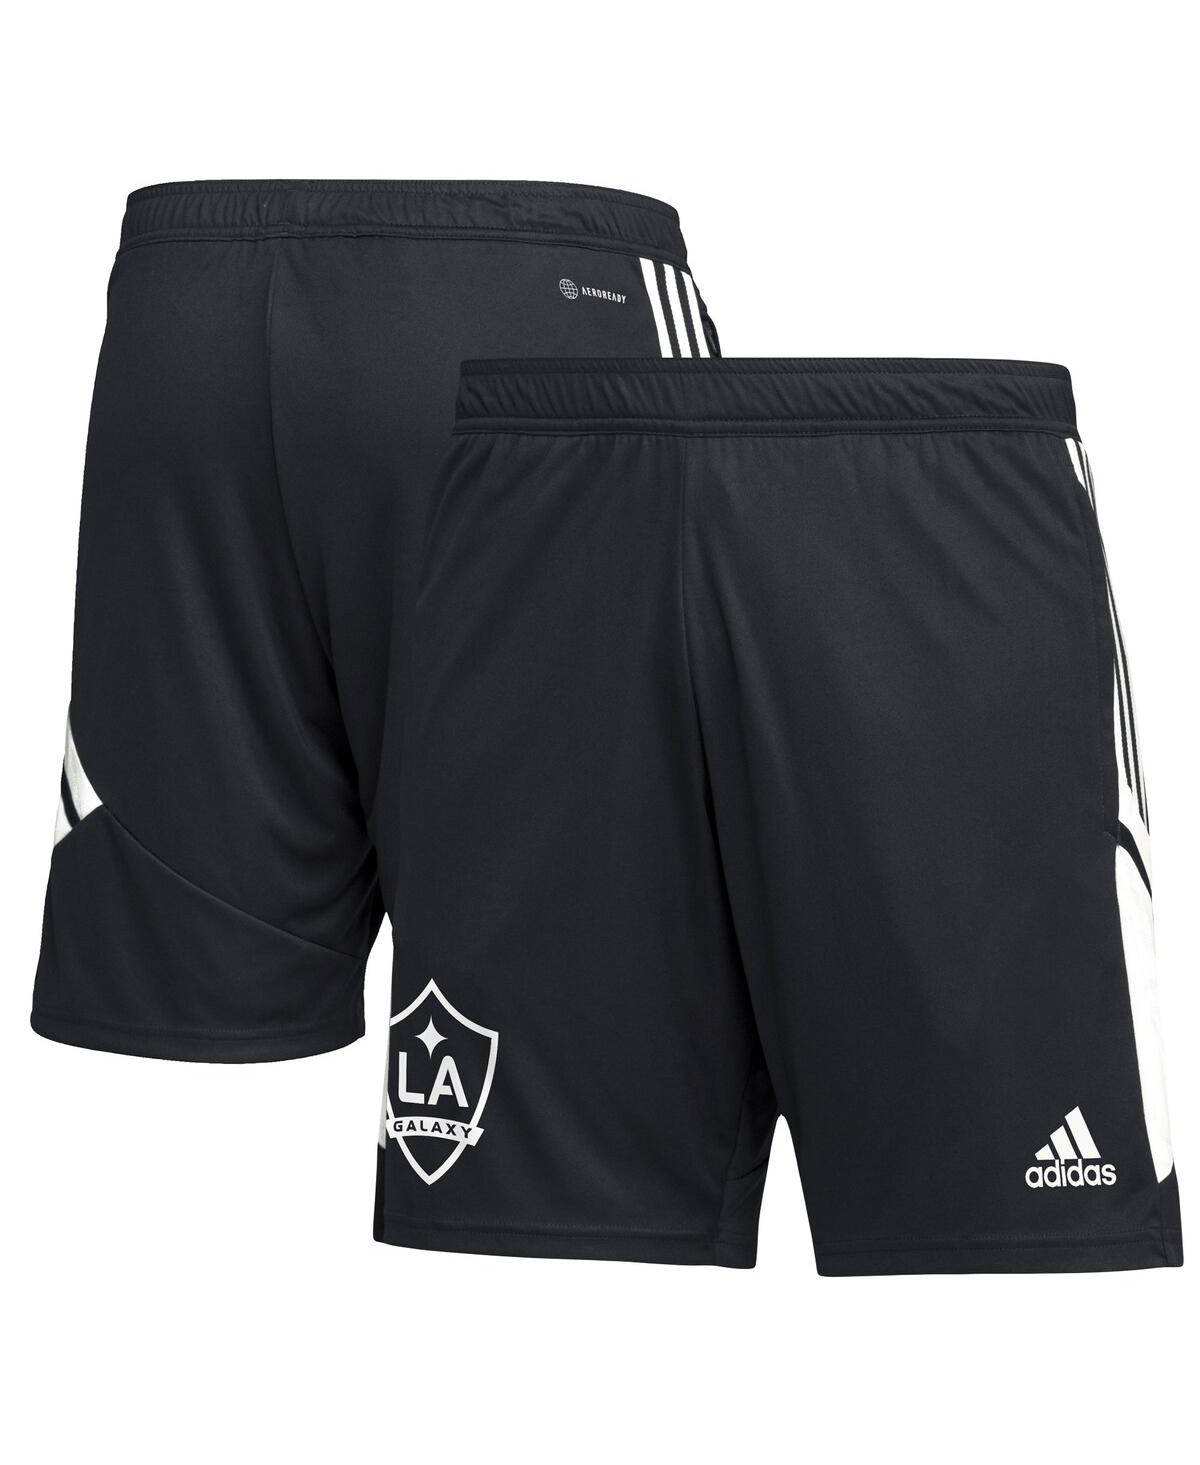 Shop Adidas Originals Men's Adidas Black La Galaxy Soccer Training Aeroready Shorts